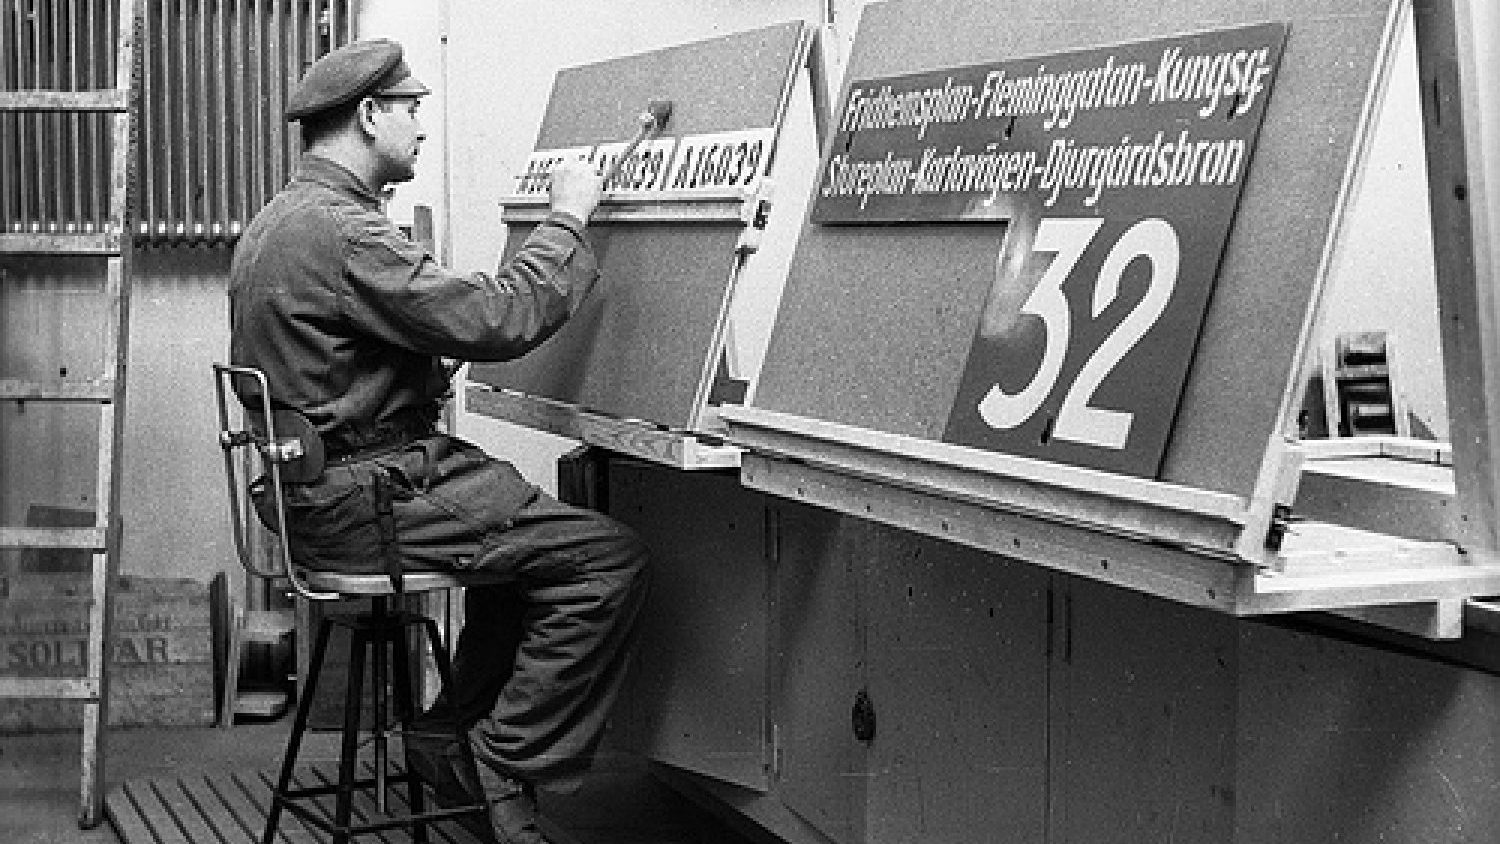 Zīmju krāsotājs tramvaju depo, 1943. Foto - Borje Galens